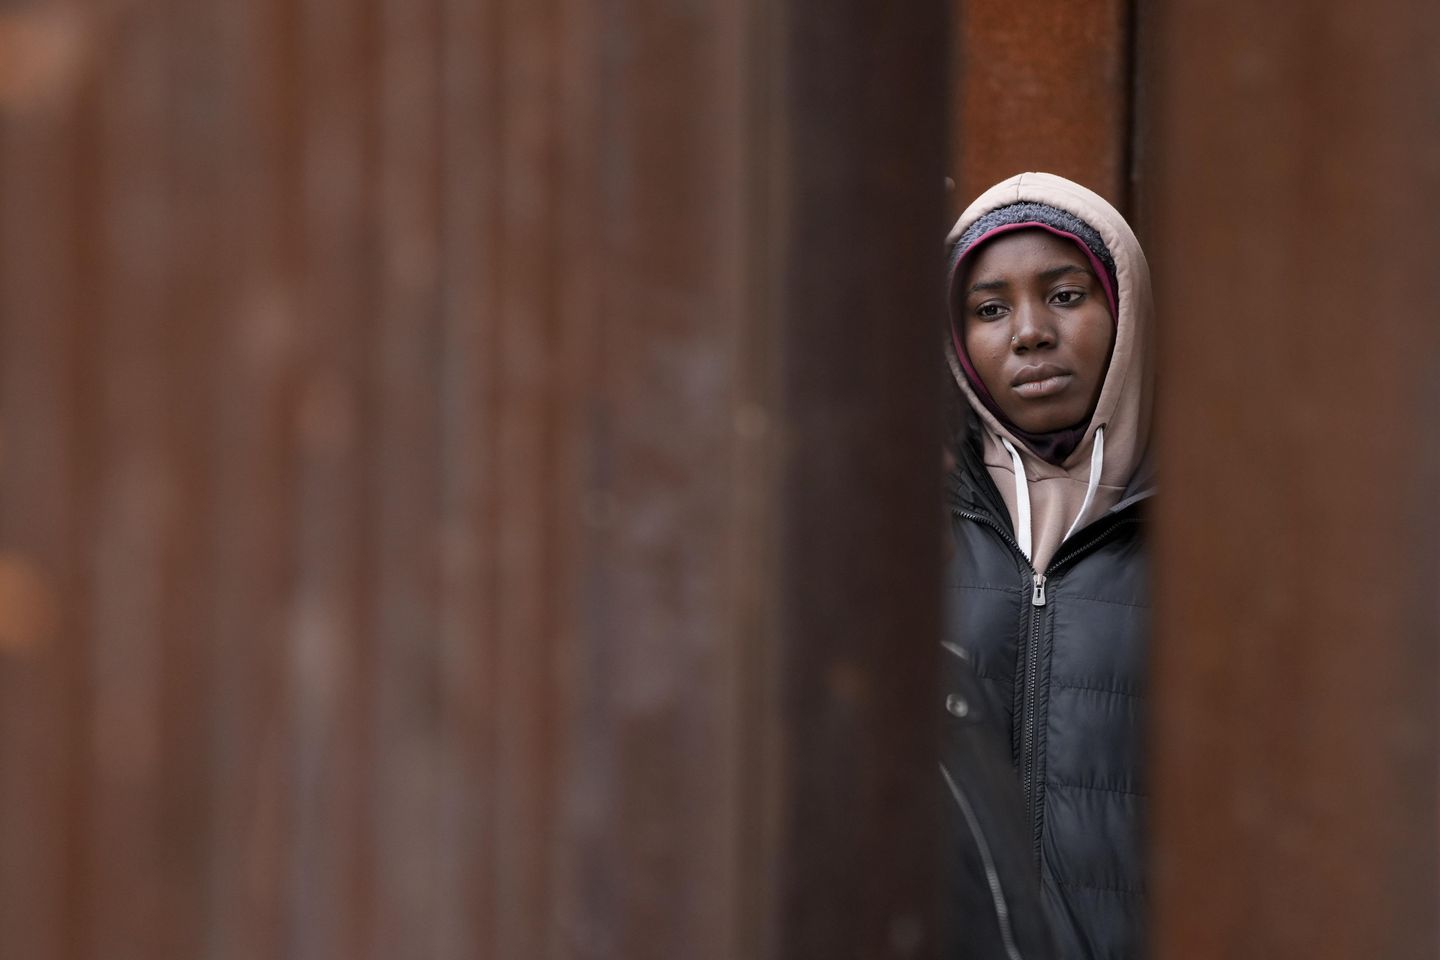 Meksika, baskıyı azaltmak için göçmenleri sınırlardan uzaklaştırıyor